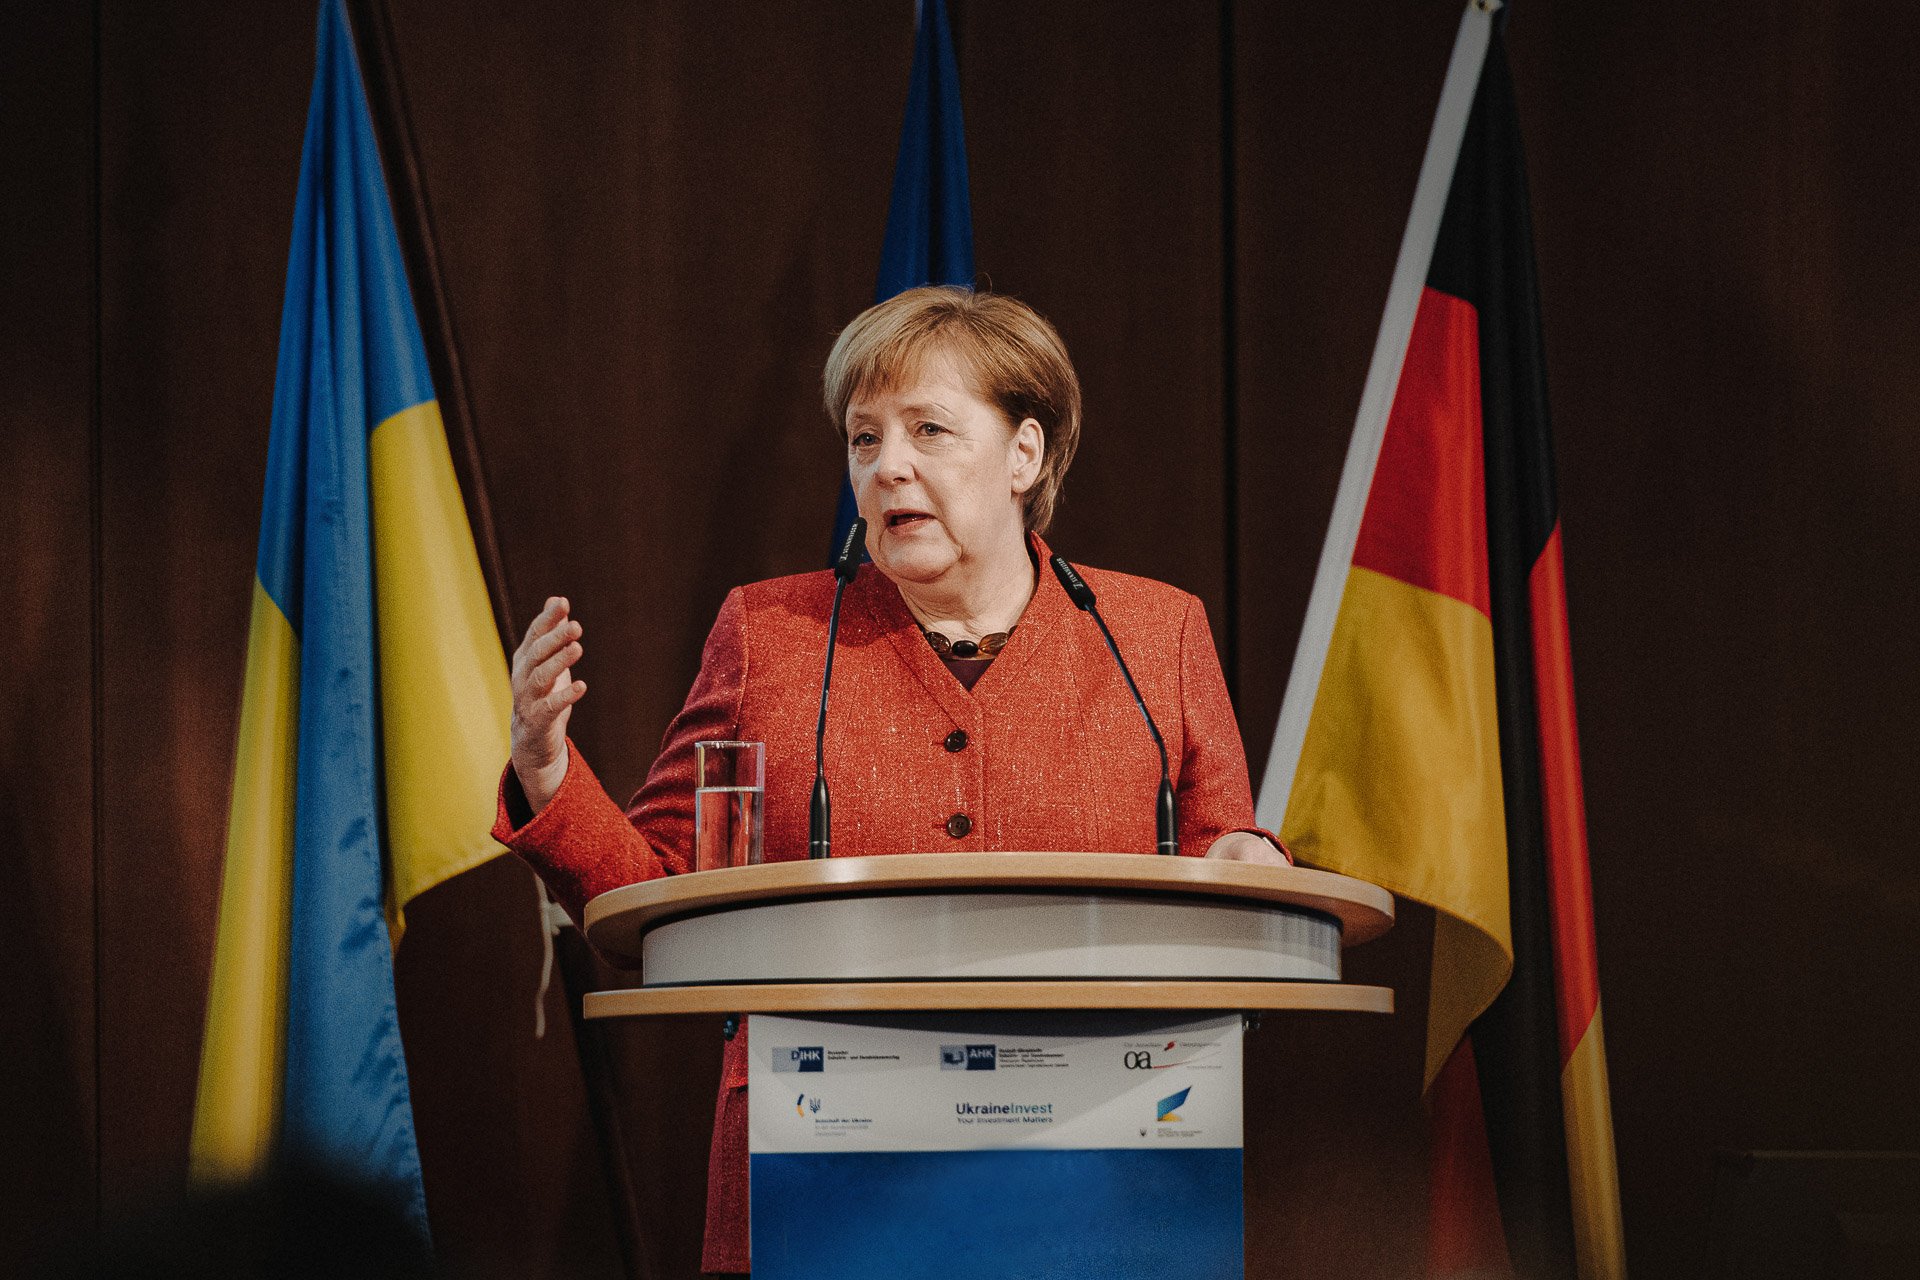 businessfotografie-berlin-DIHK-Besuch-Angela-Merkel-1.jpg